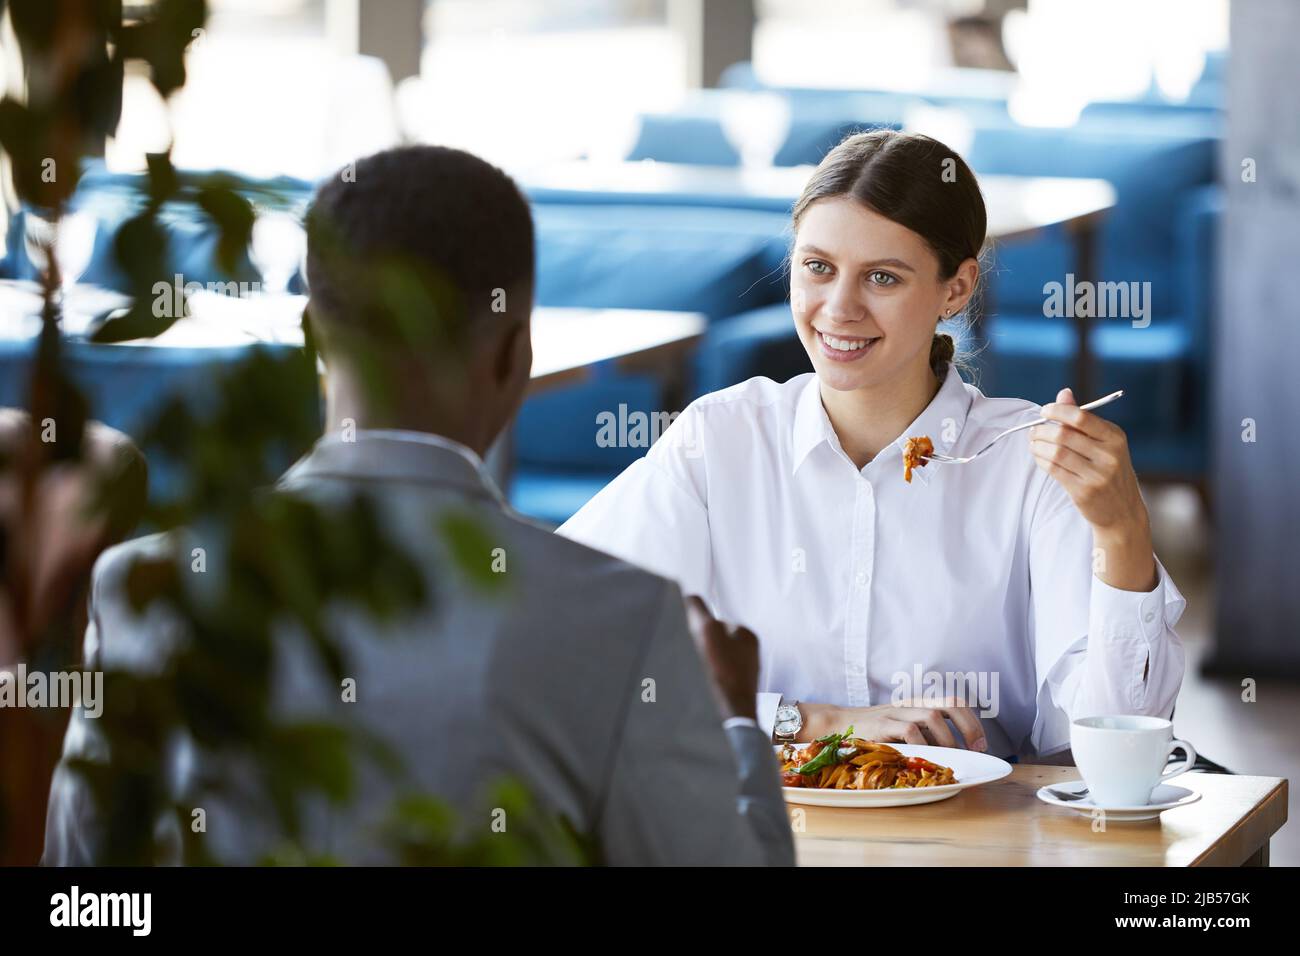 Positive aufgeregte junge Geschäftsfrau im weißen Hemd, die am Tisch sitzt und Pasta isst, während sie sich mit der schwarzen Führungskraft im Café trifft Stockfoto